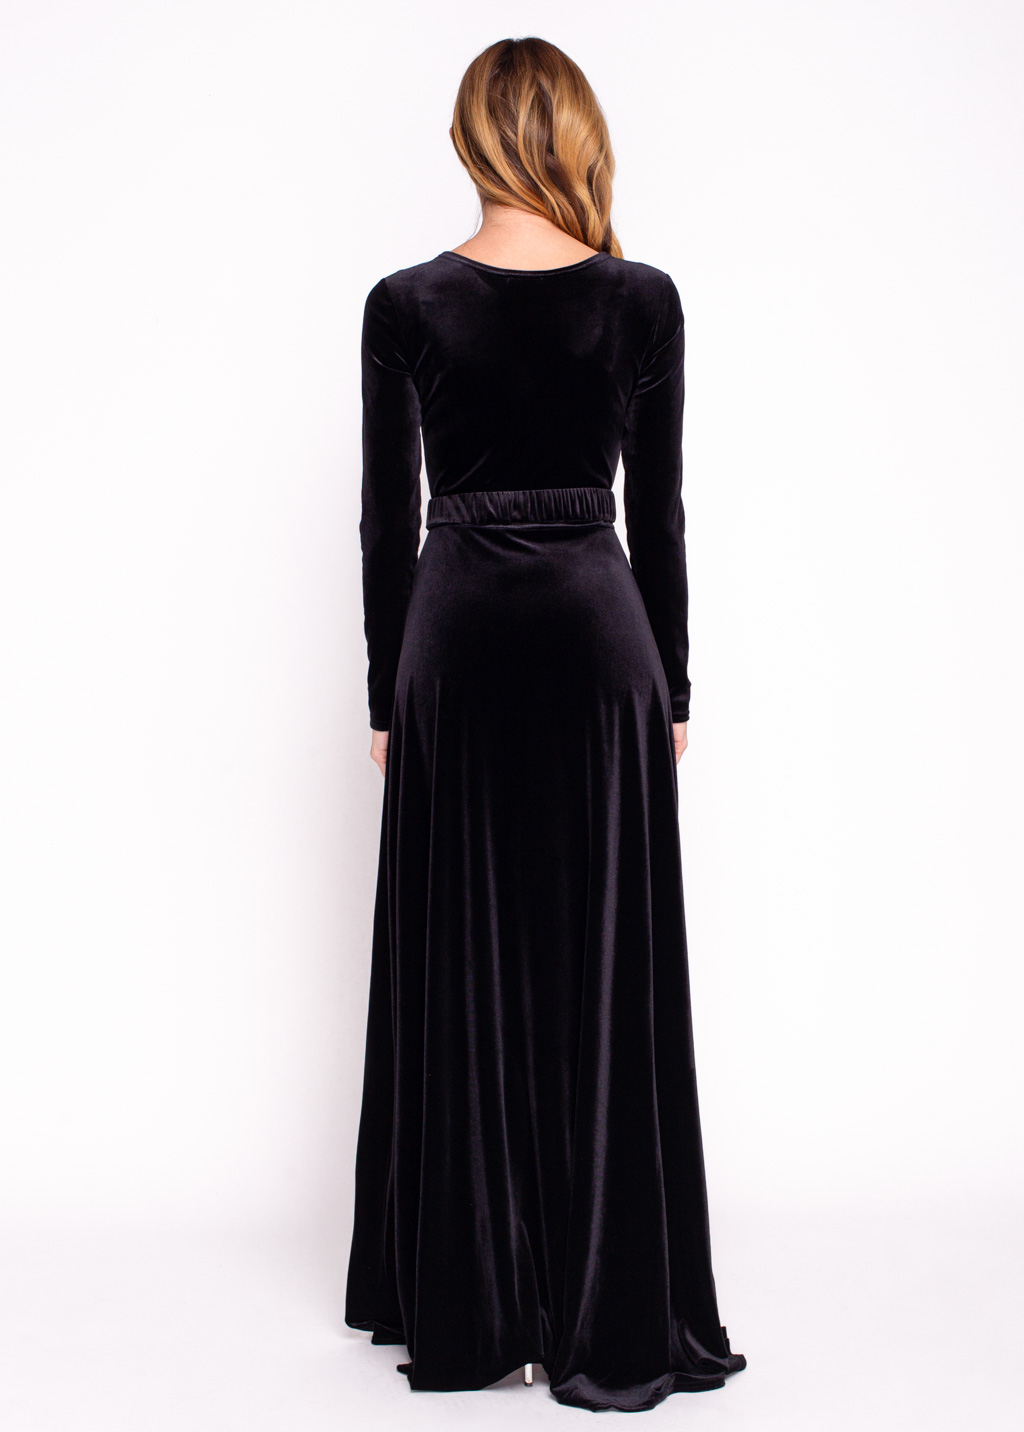 Black velvet long dress with belt